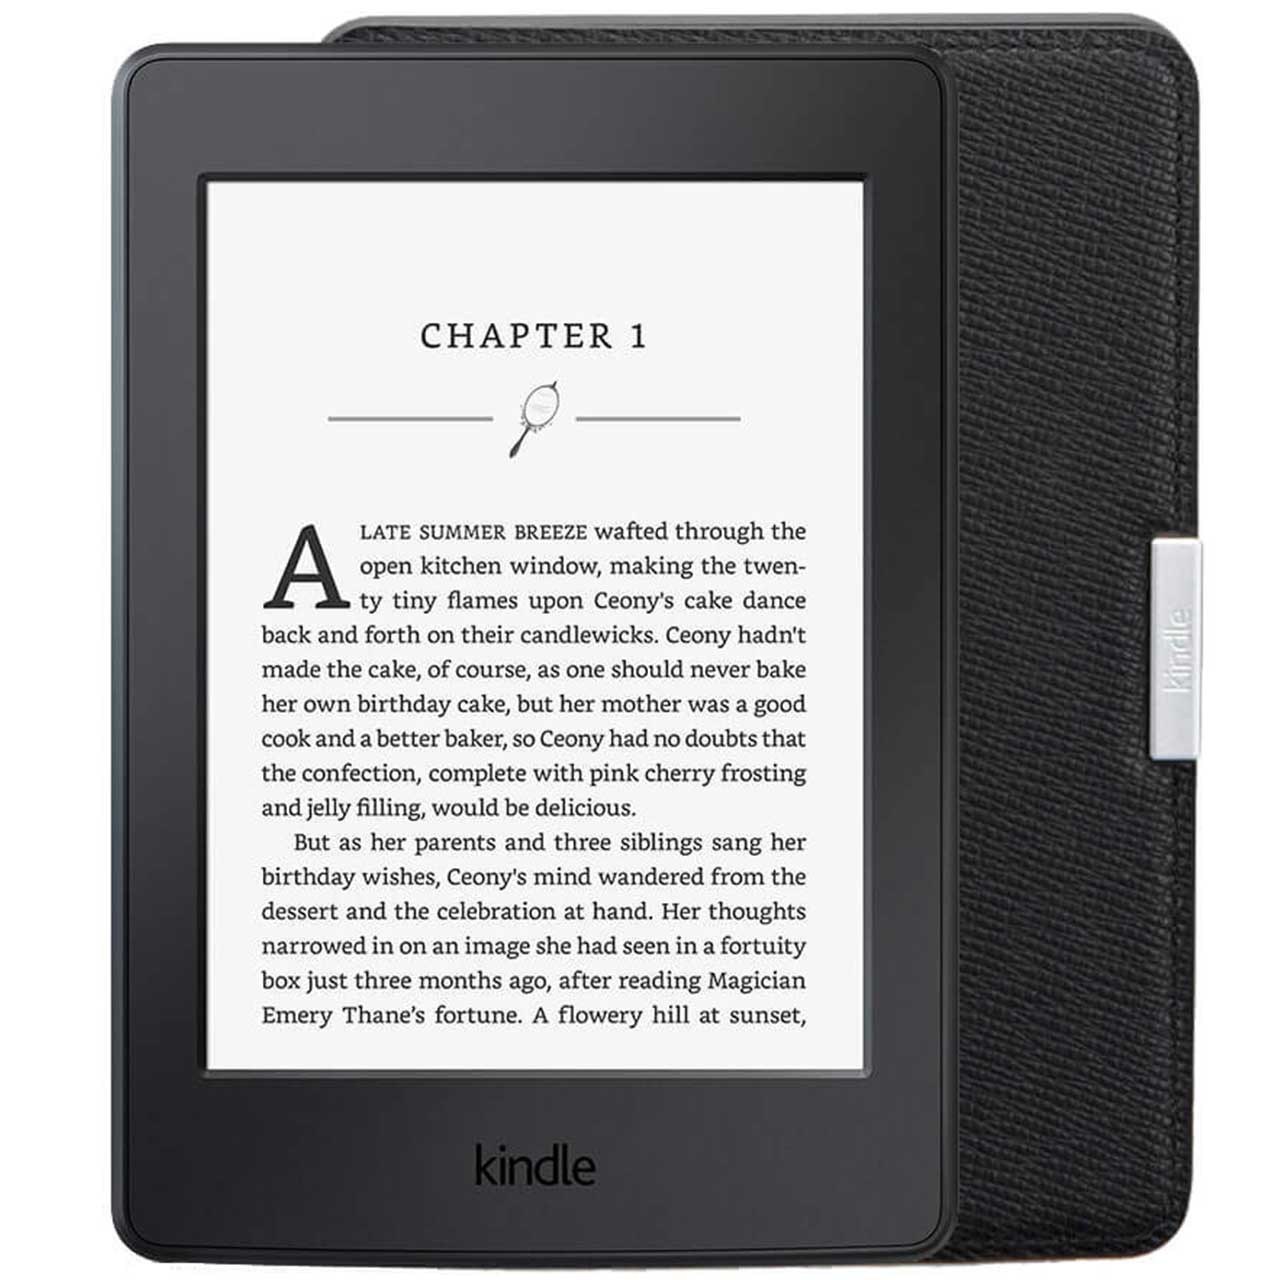 کتاب خوان آمازون مدل Kindle نسل هفتم همراه با کاور چرمی - ظرفیت 4 گیگابایت